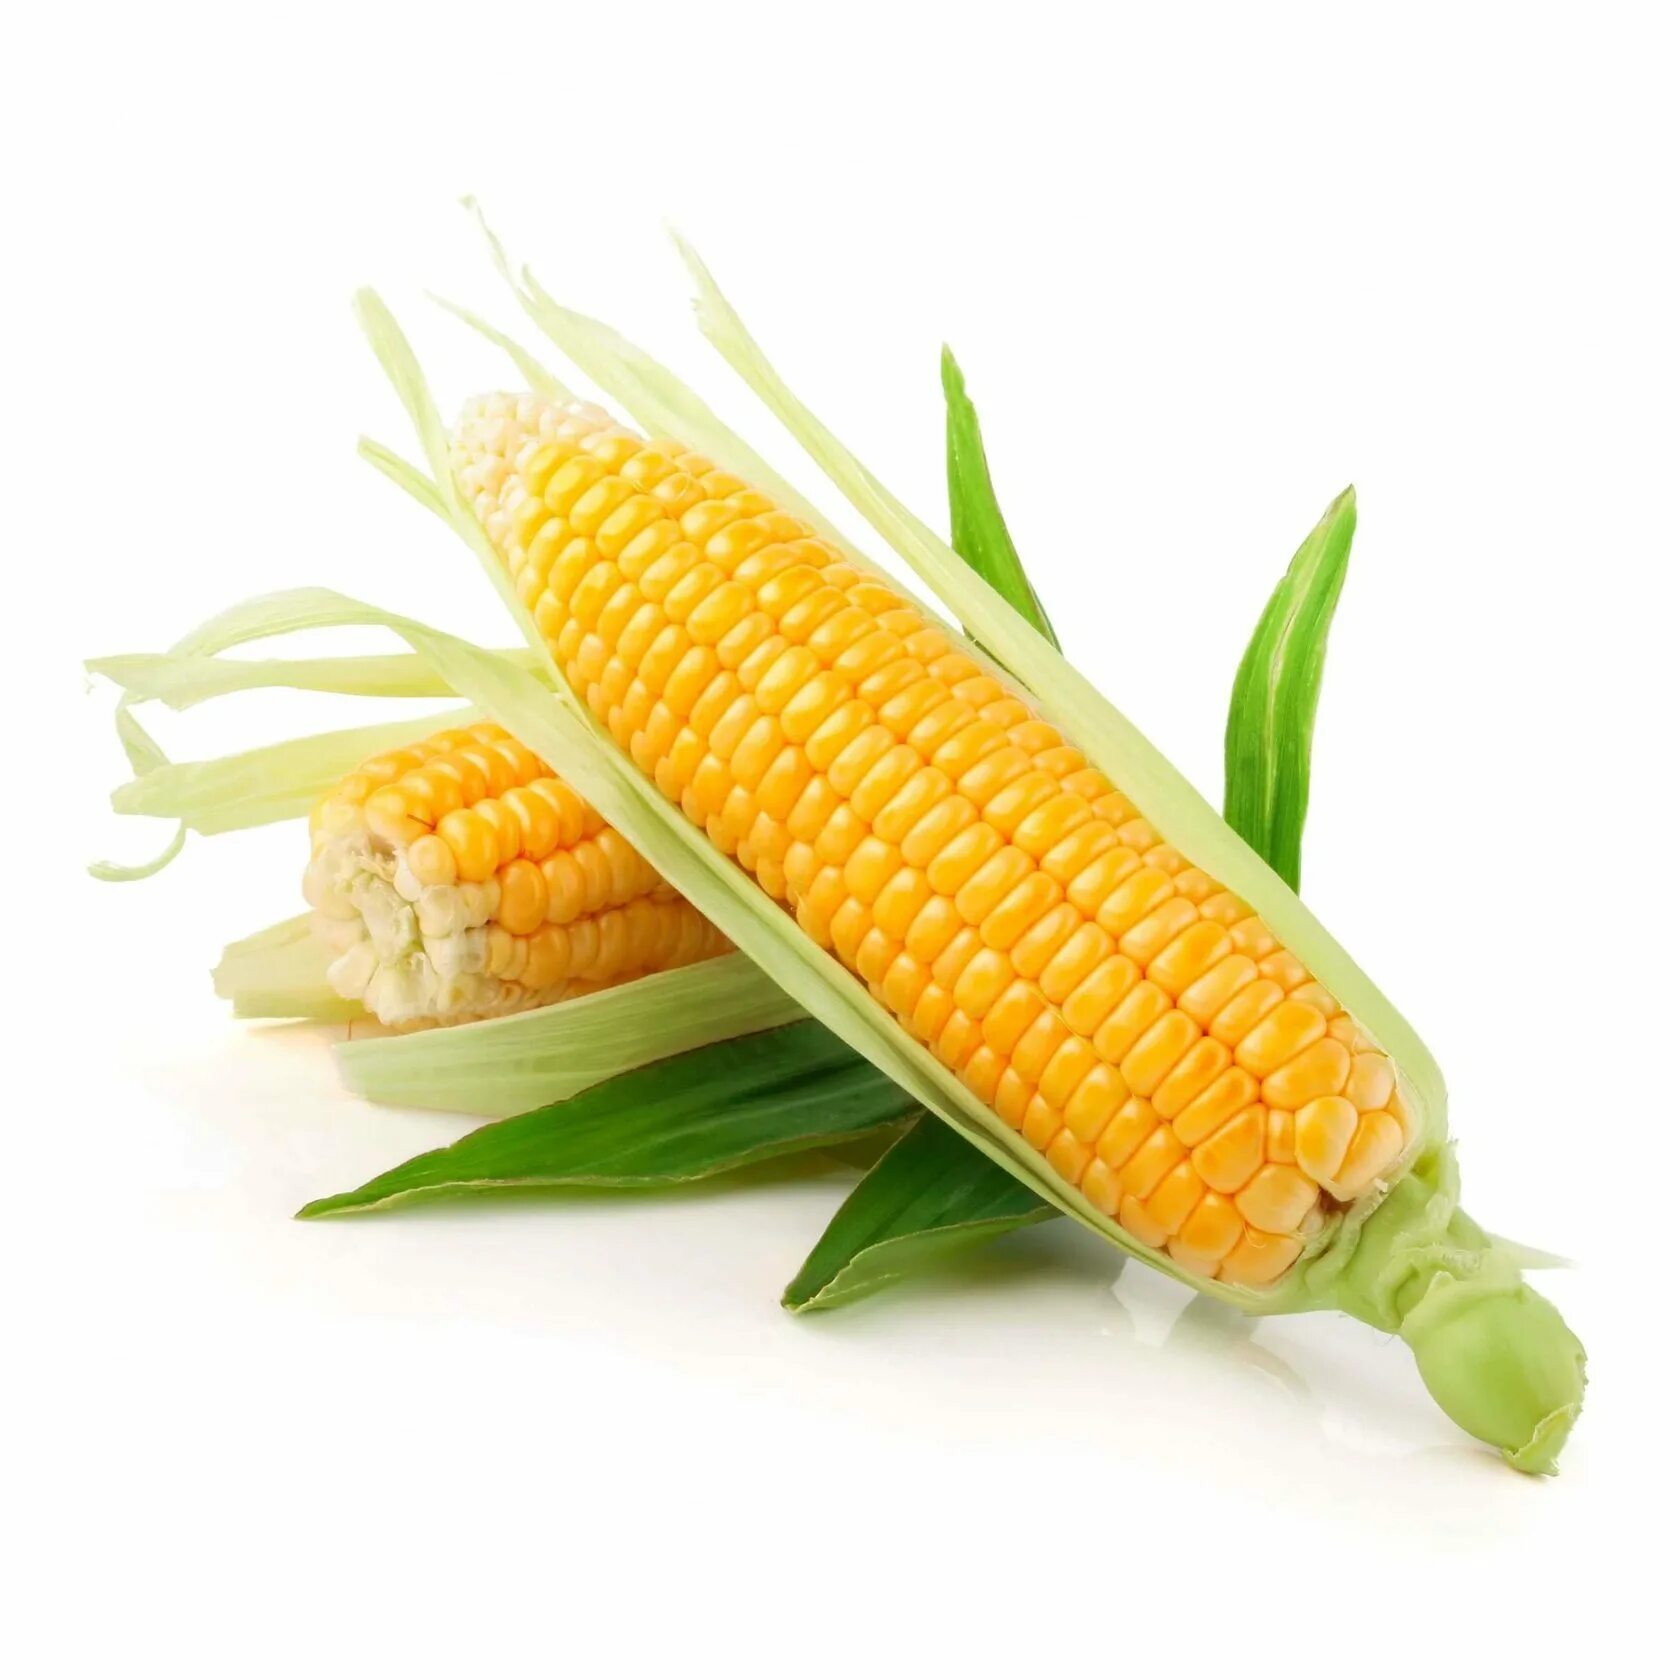 Corn кукуруза. Кукуруза початок. Кочерыжка кукурузы. Качан кукурузы. Мисир, Misir.